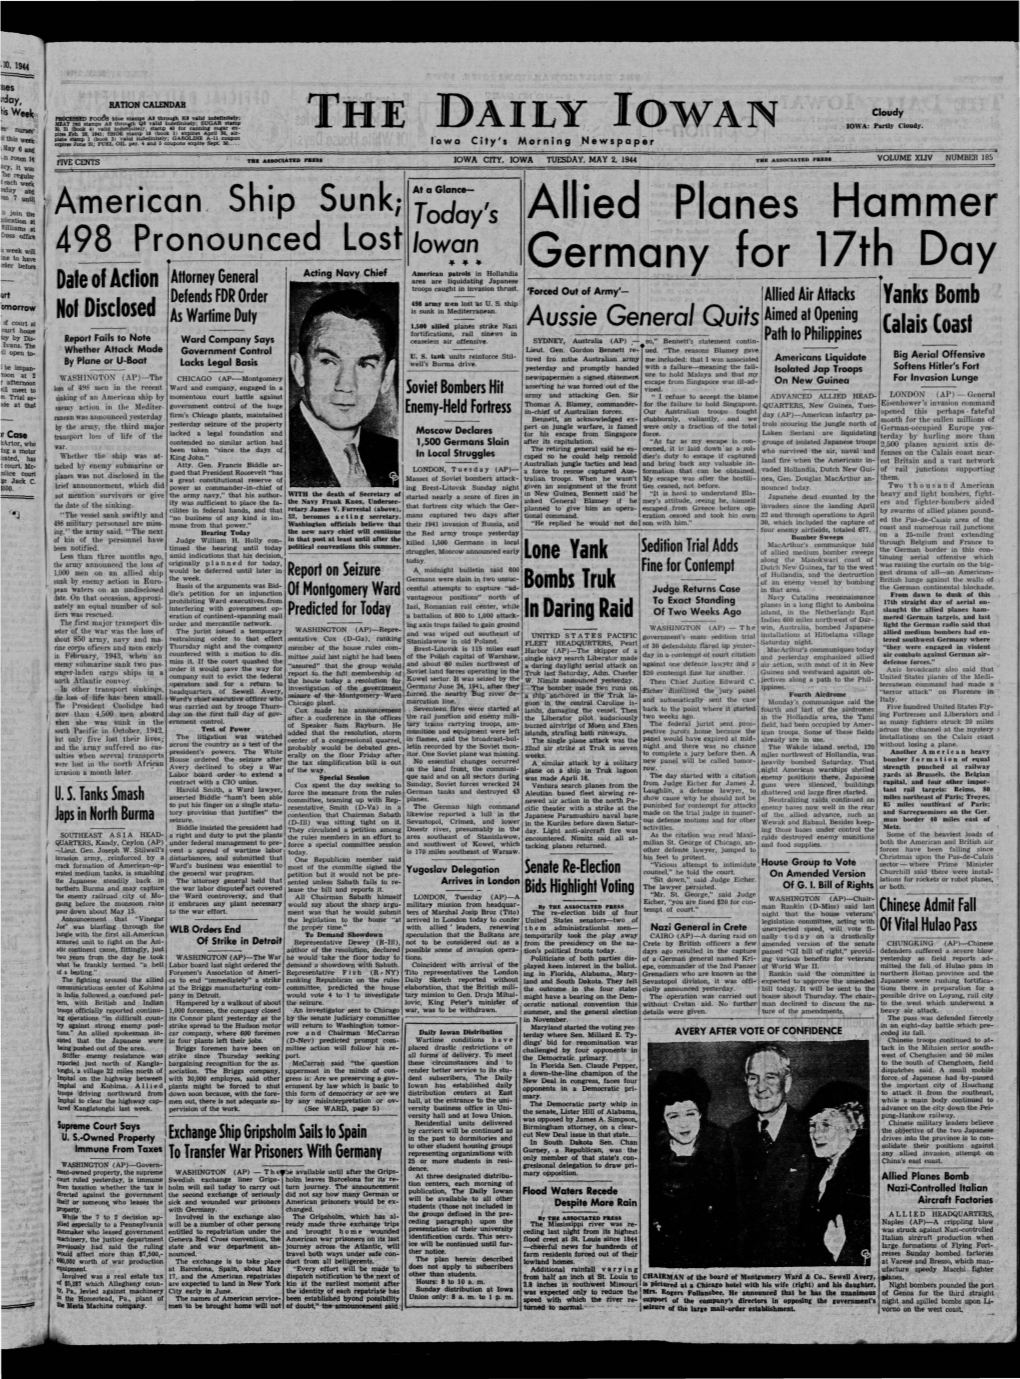 Daily Iowan (Iowa City, Iowa), 1944-05-02